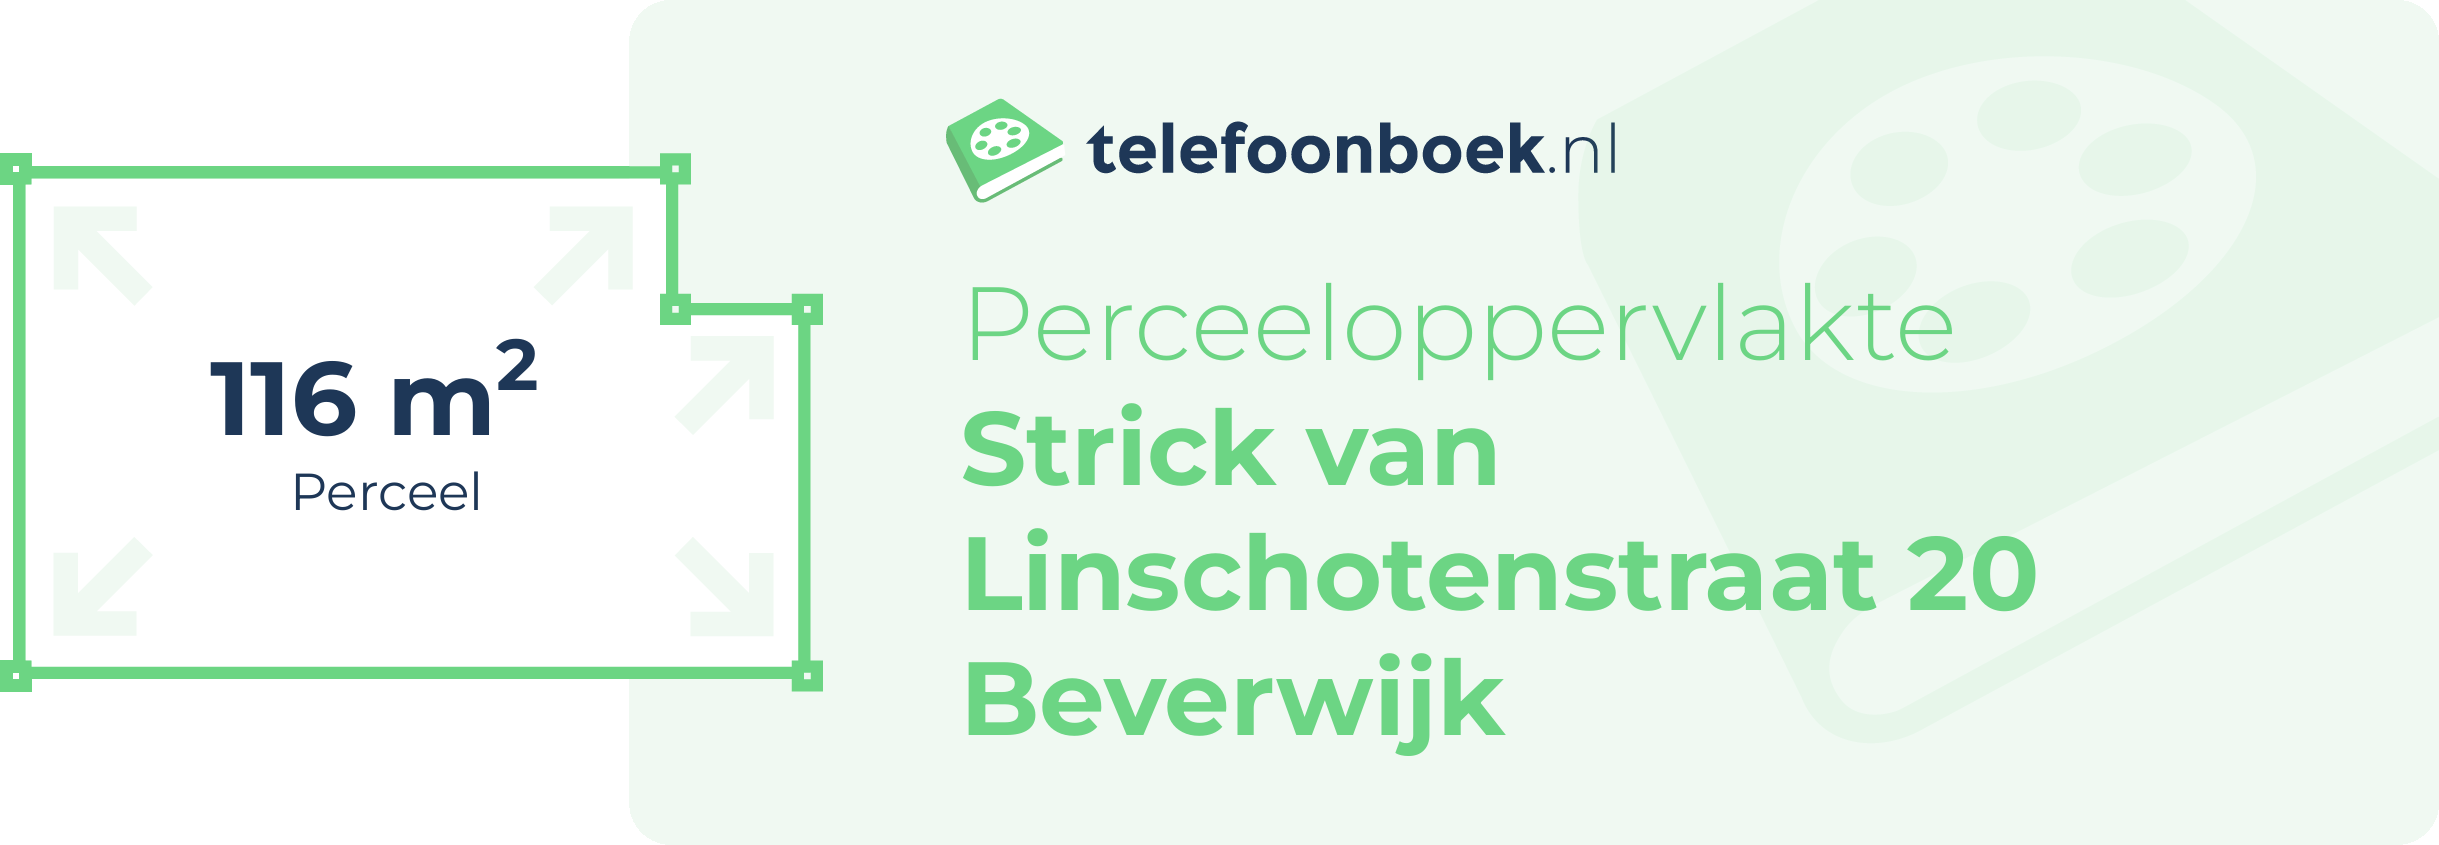 Perceeloppervlakte Strick Van Linschotenstraat 20 Beverwijk